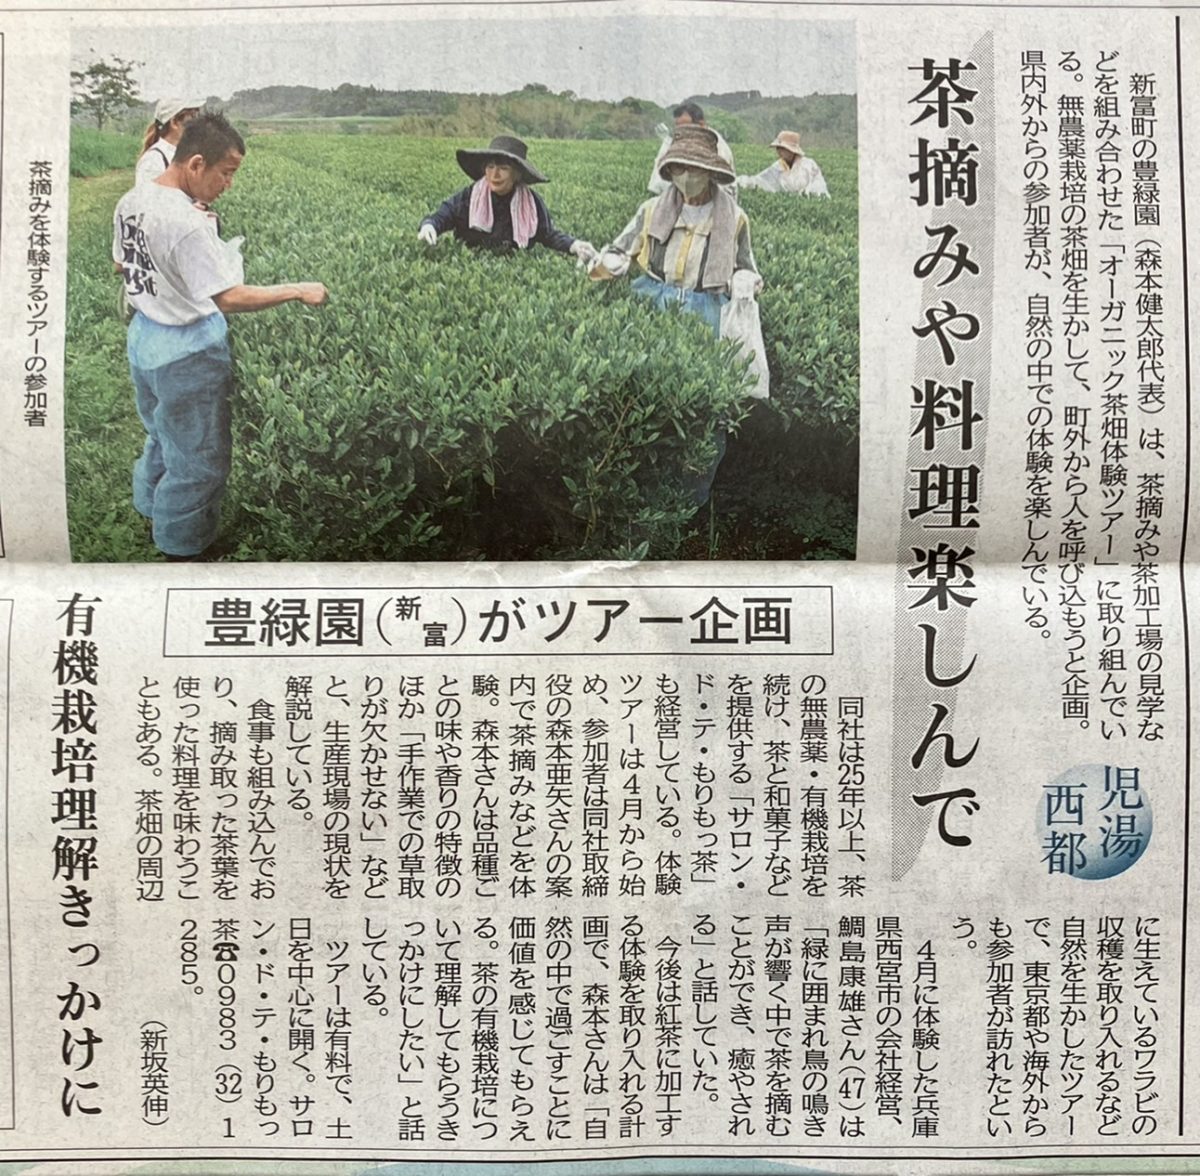 宮日新聞さんが「オーガニック茶畑体験ツアー」を掲載してくださいました♪